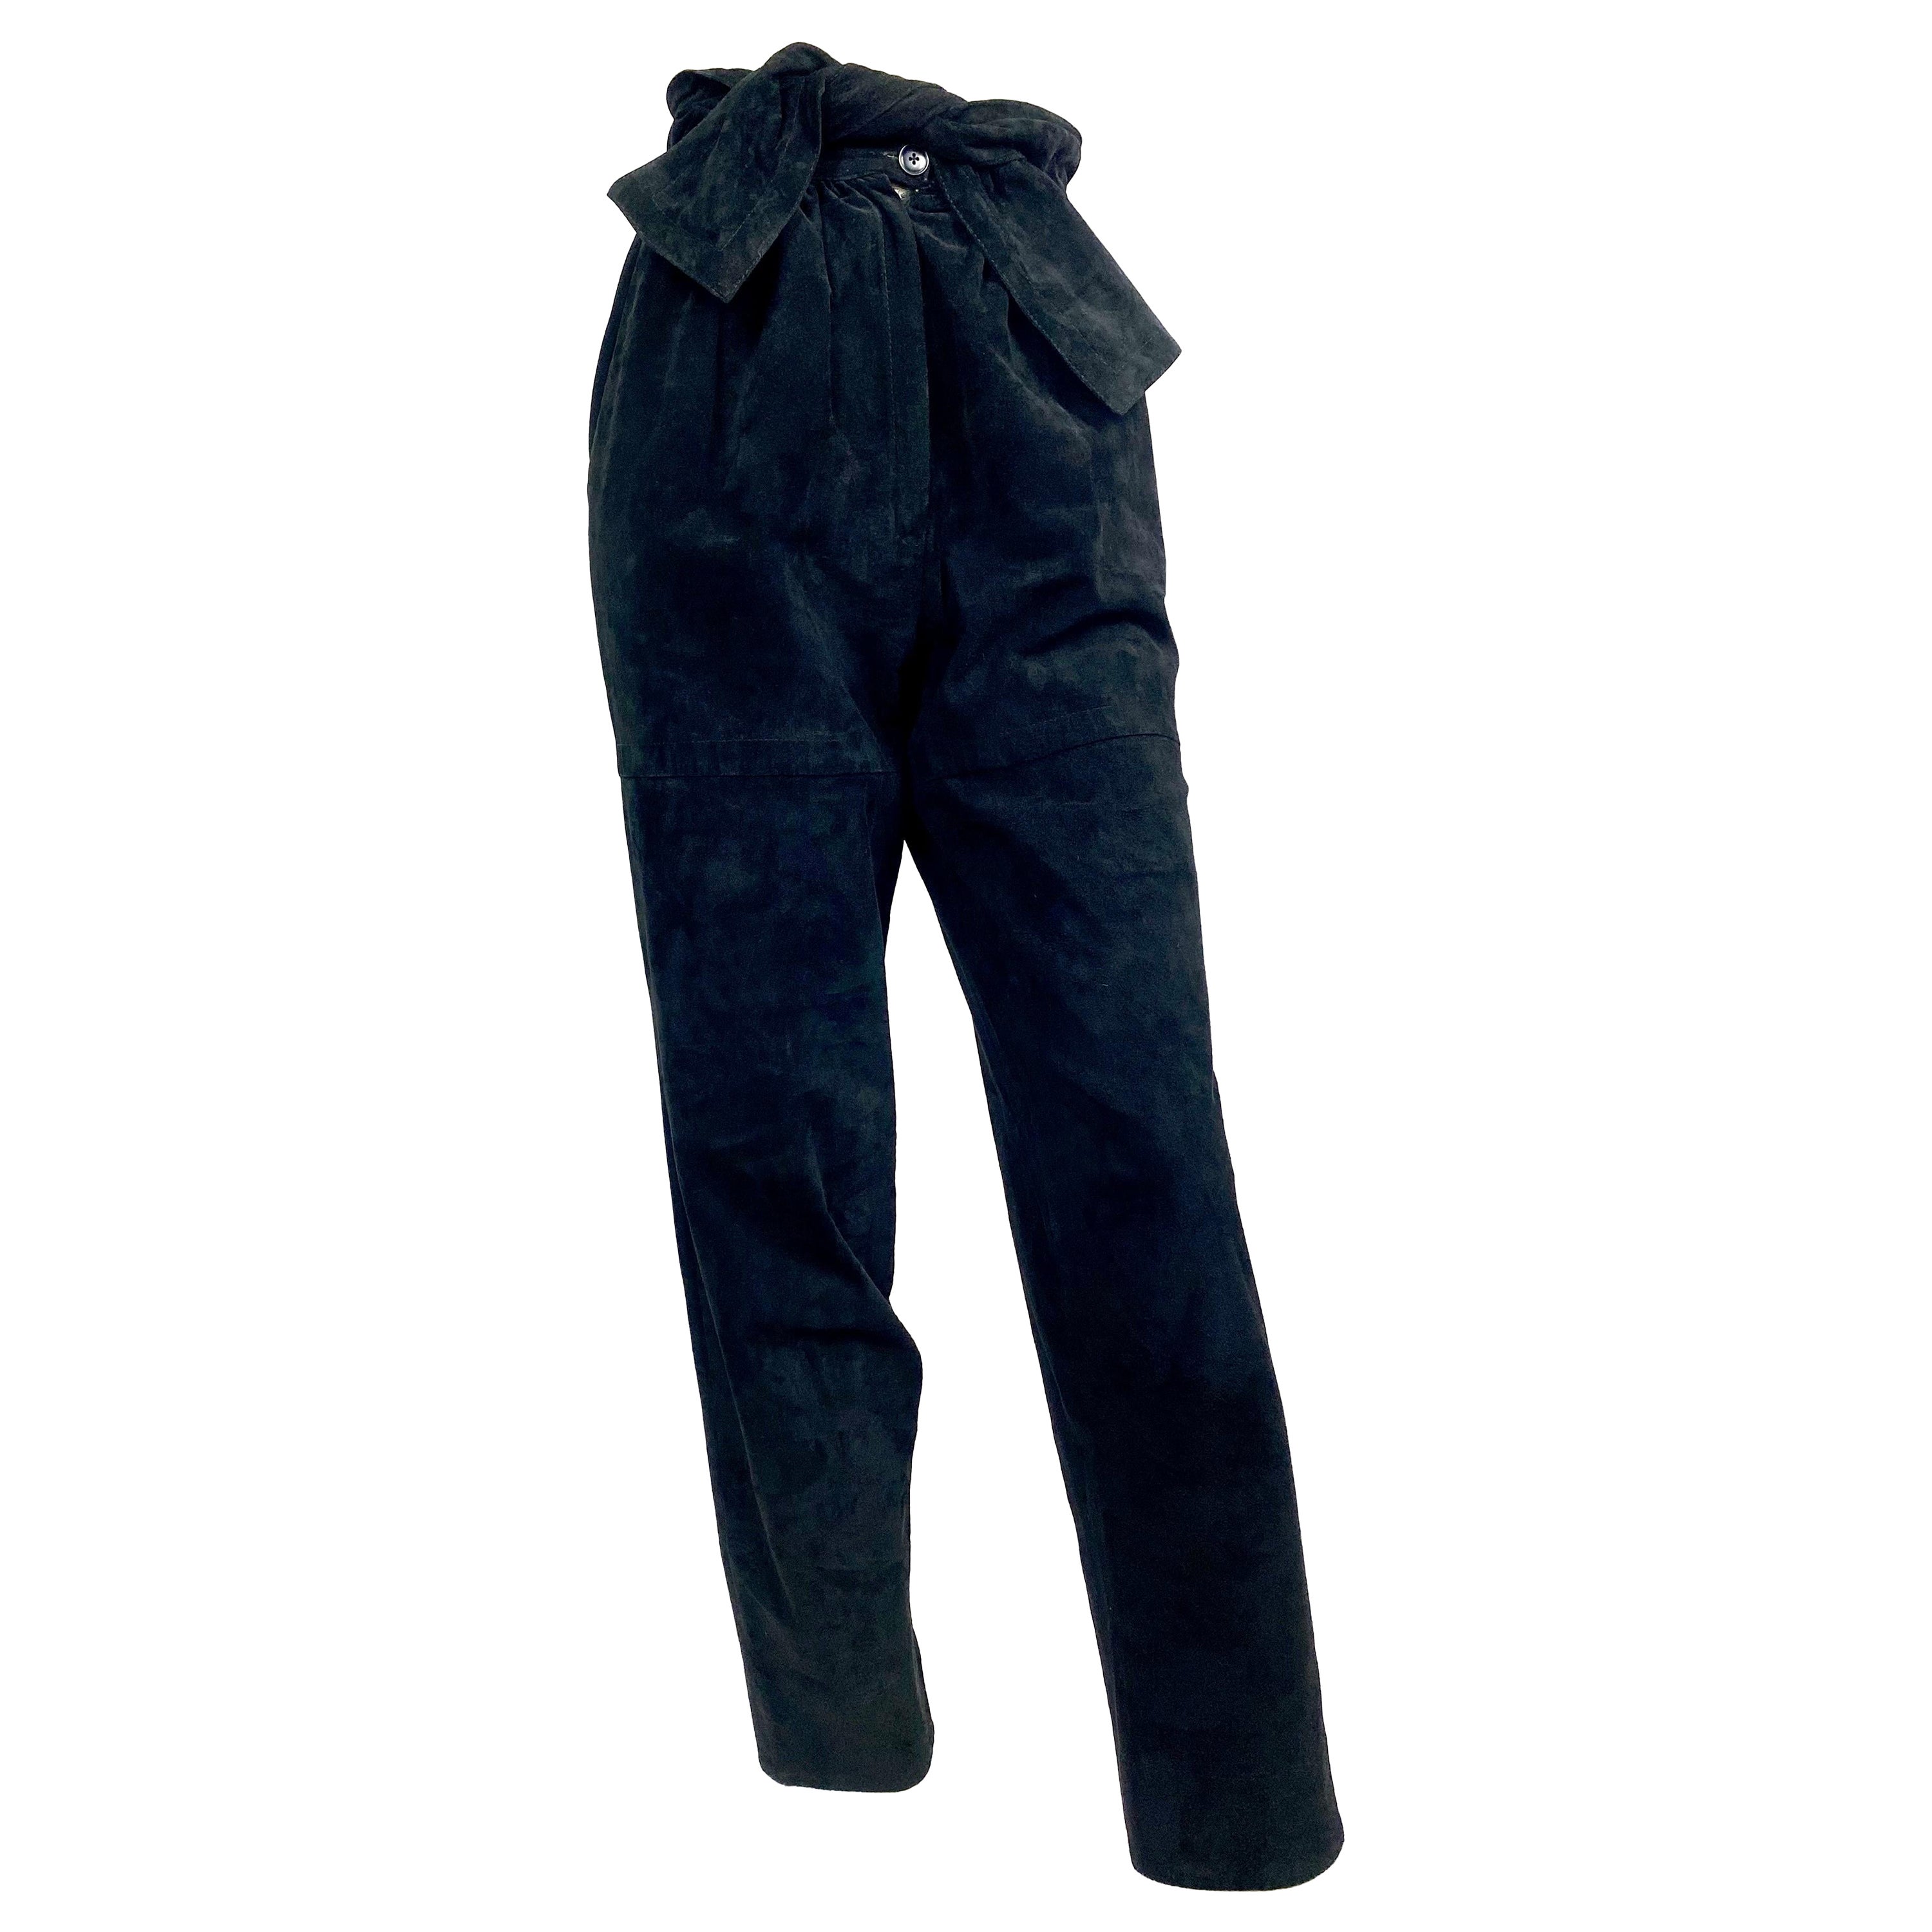 Vintage Yves Saint Laurent 1980's pantalon harem taille haute en cuir velours noir